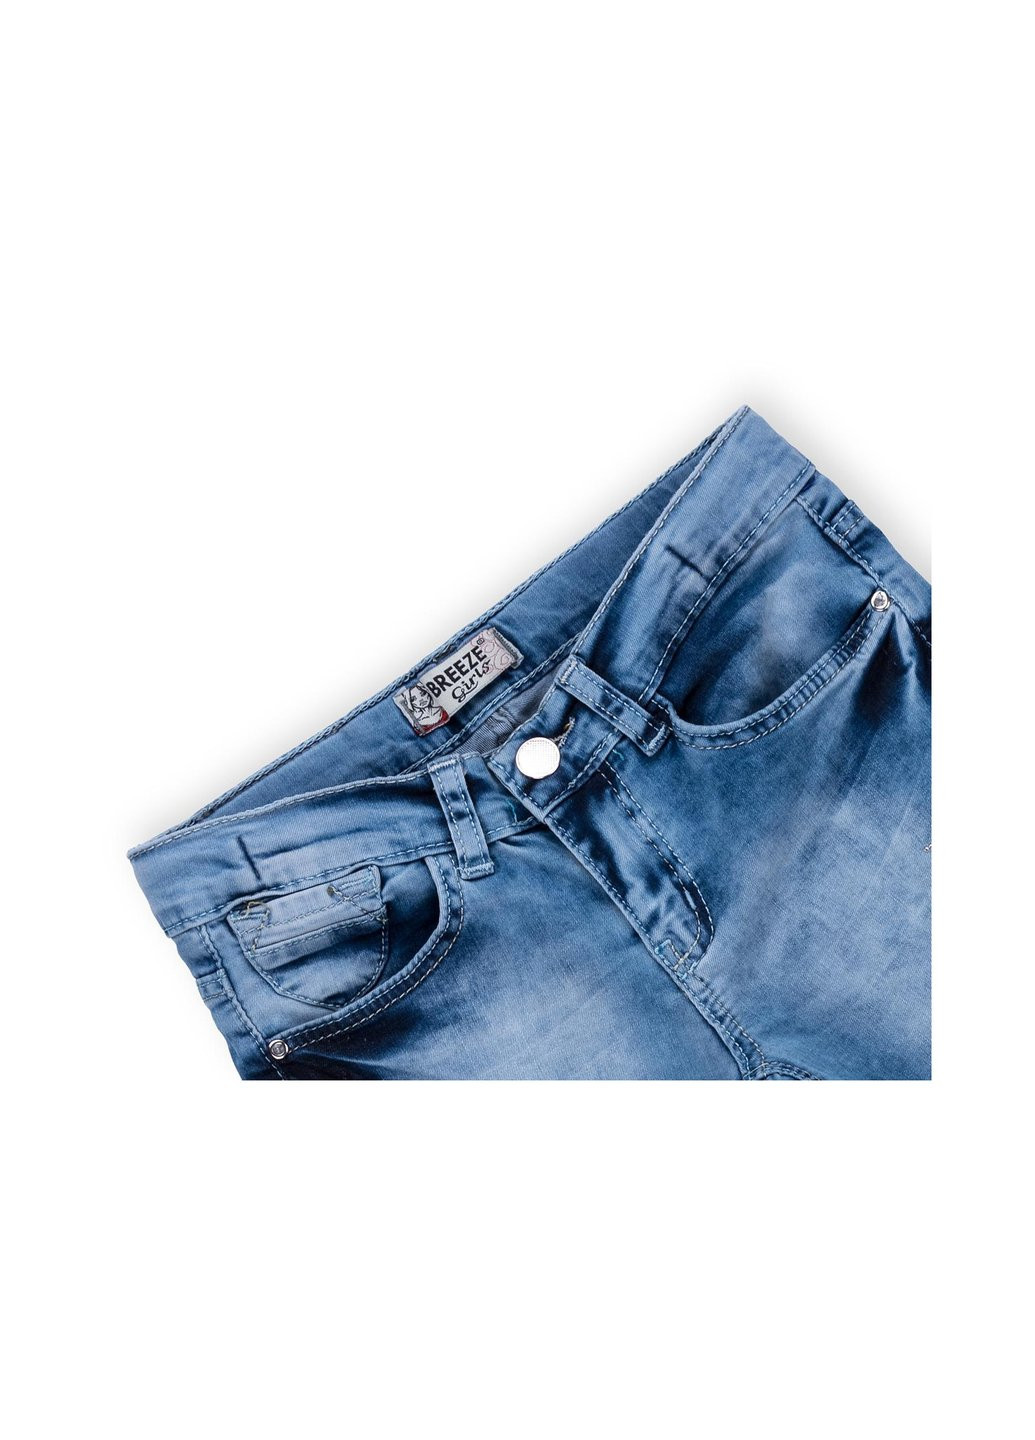 Голубые демисезонные джинсы со звездочками (20109-152g-blue) Breeze